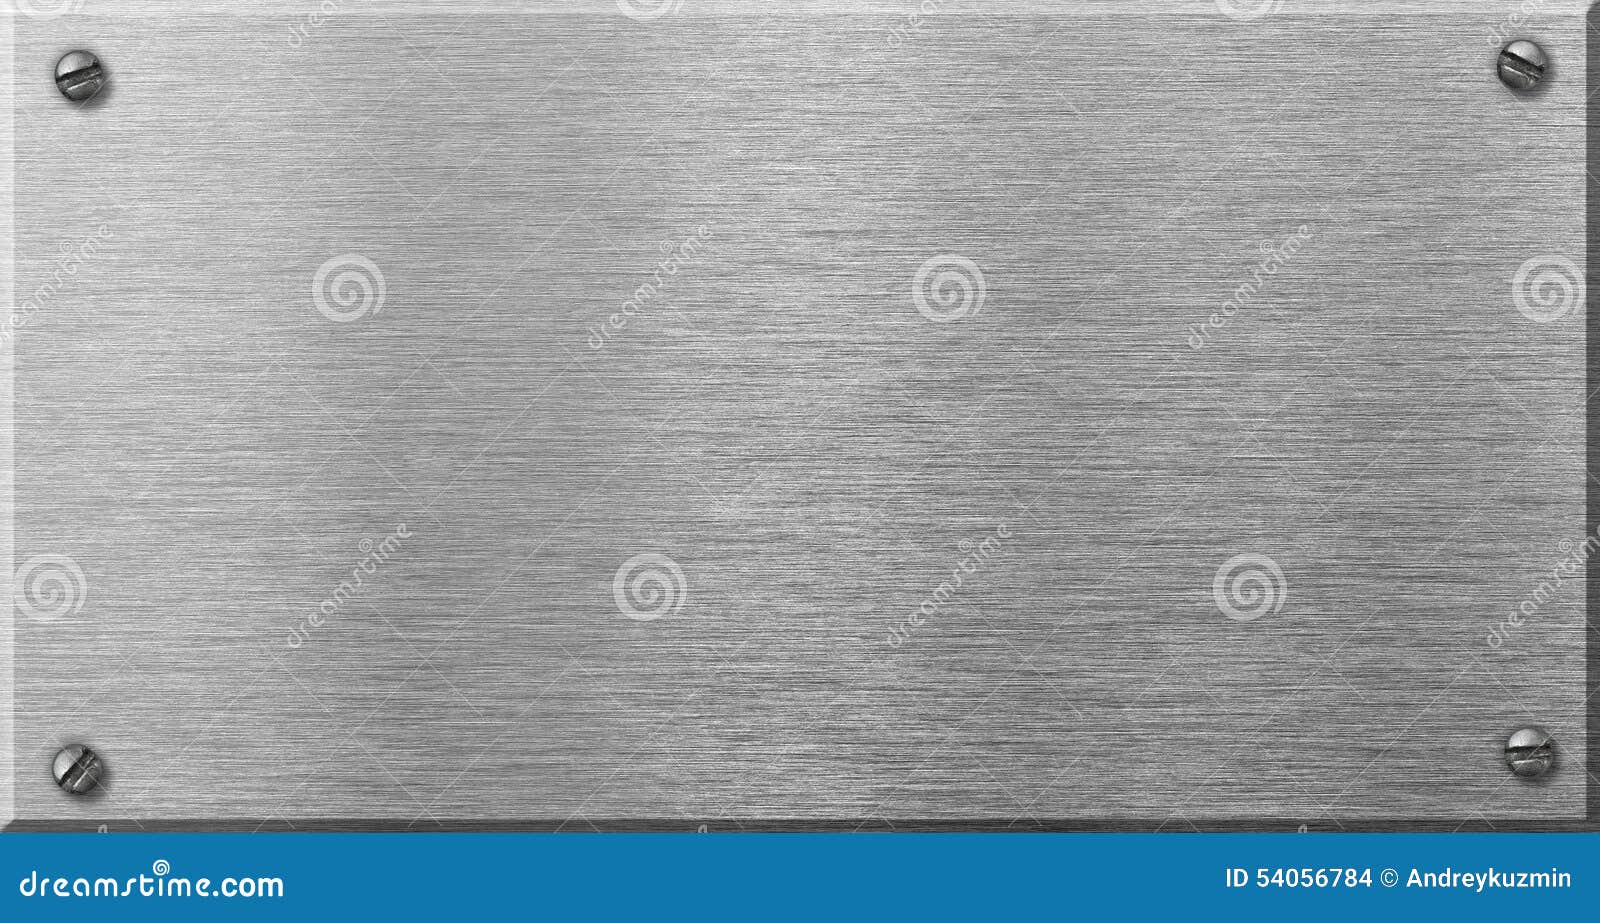 steel metal plaque with rivets